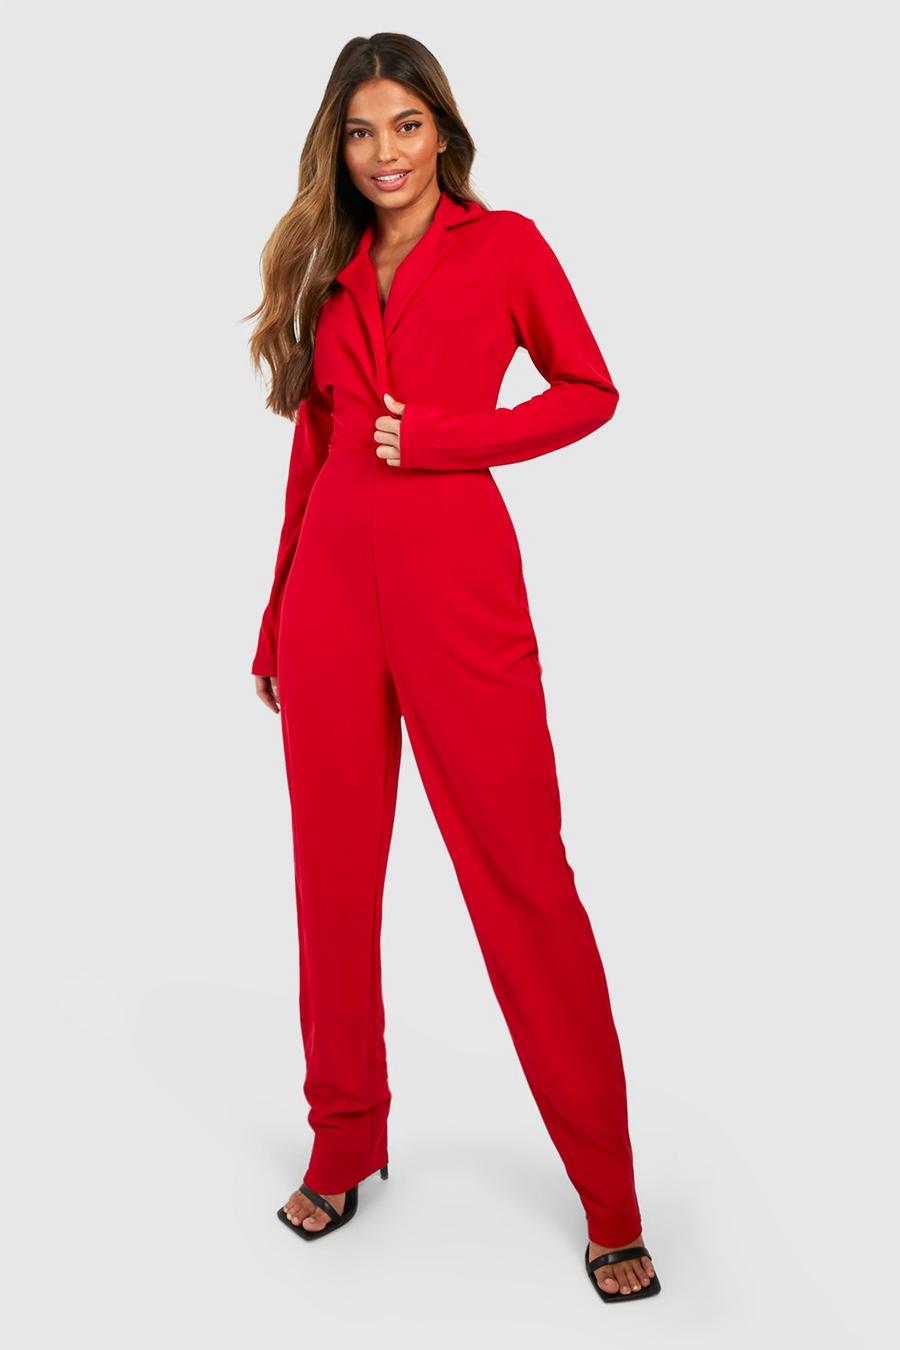 Red Getailleerde Slim Fit Wikkel Jumpsuit Met Blazer Detail